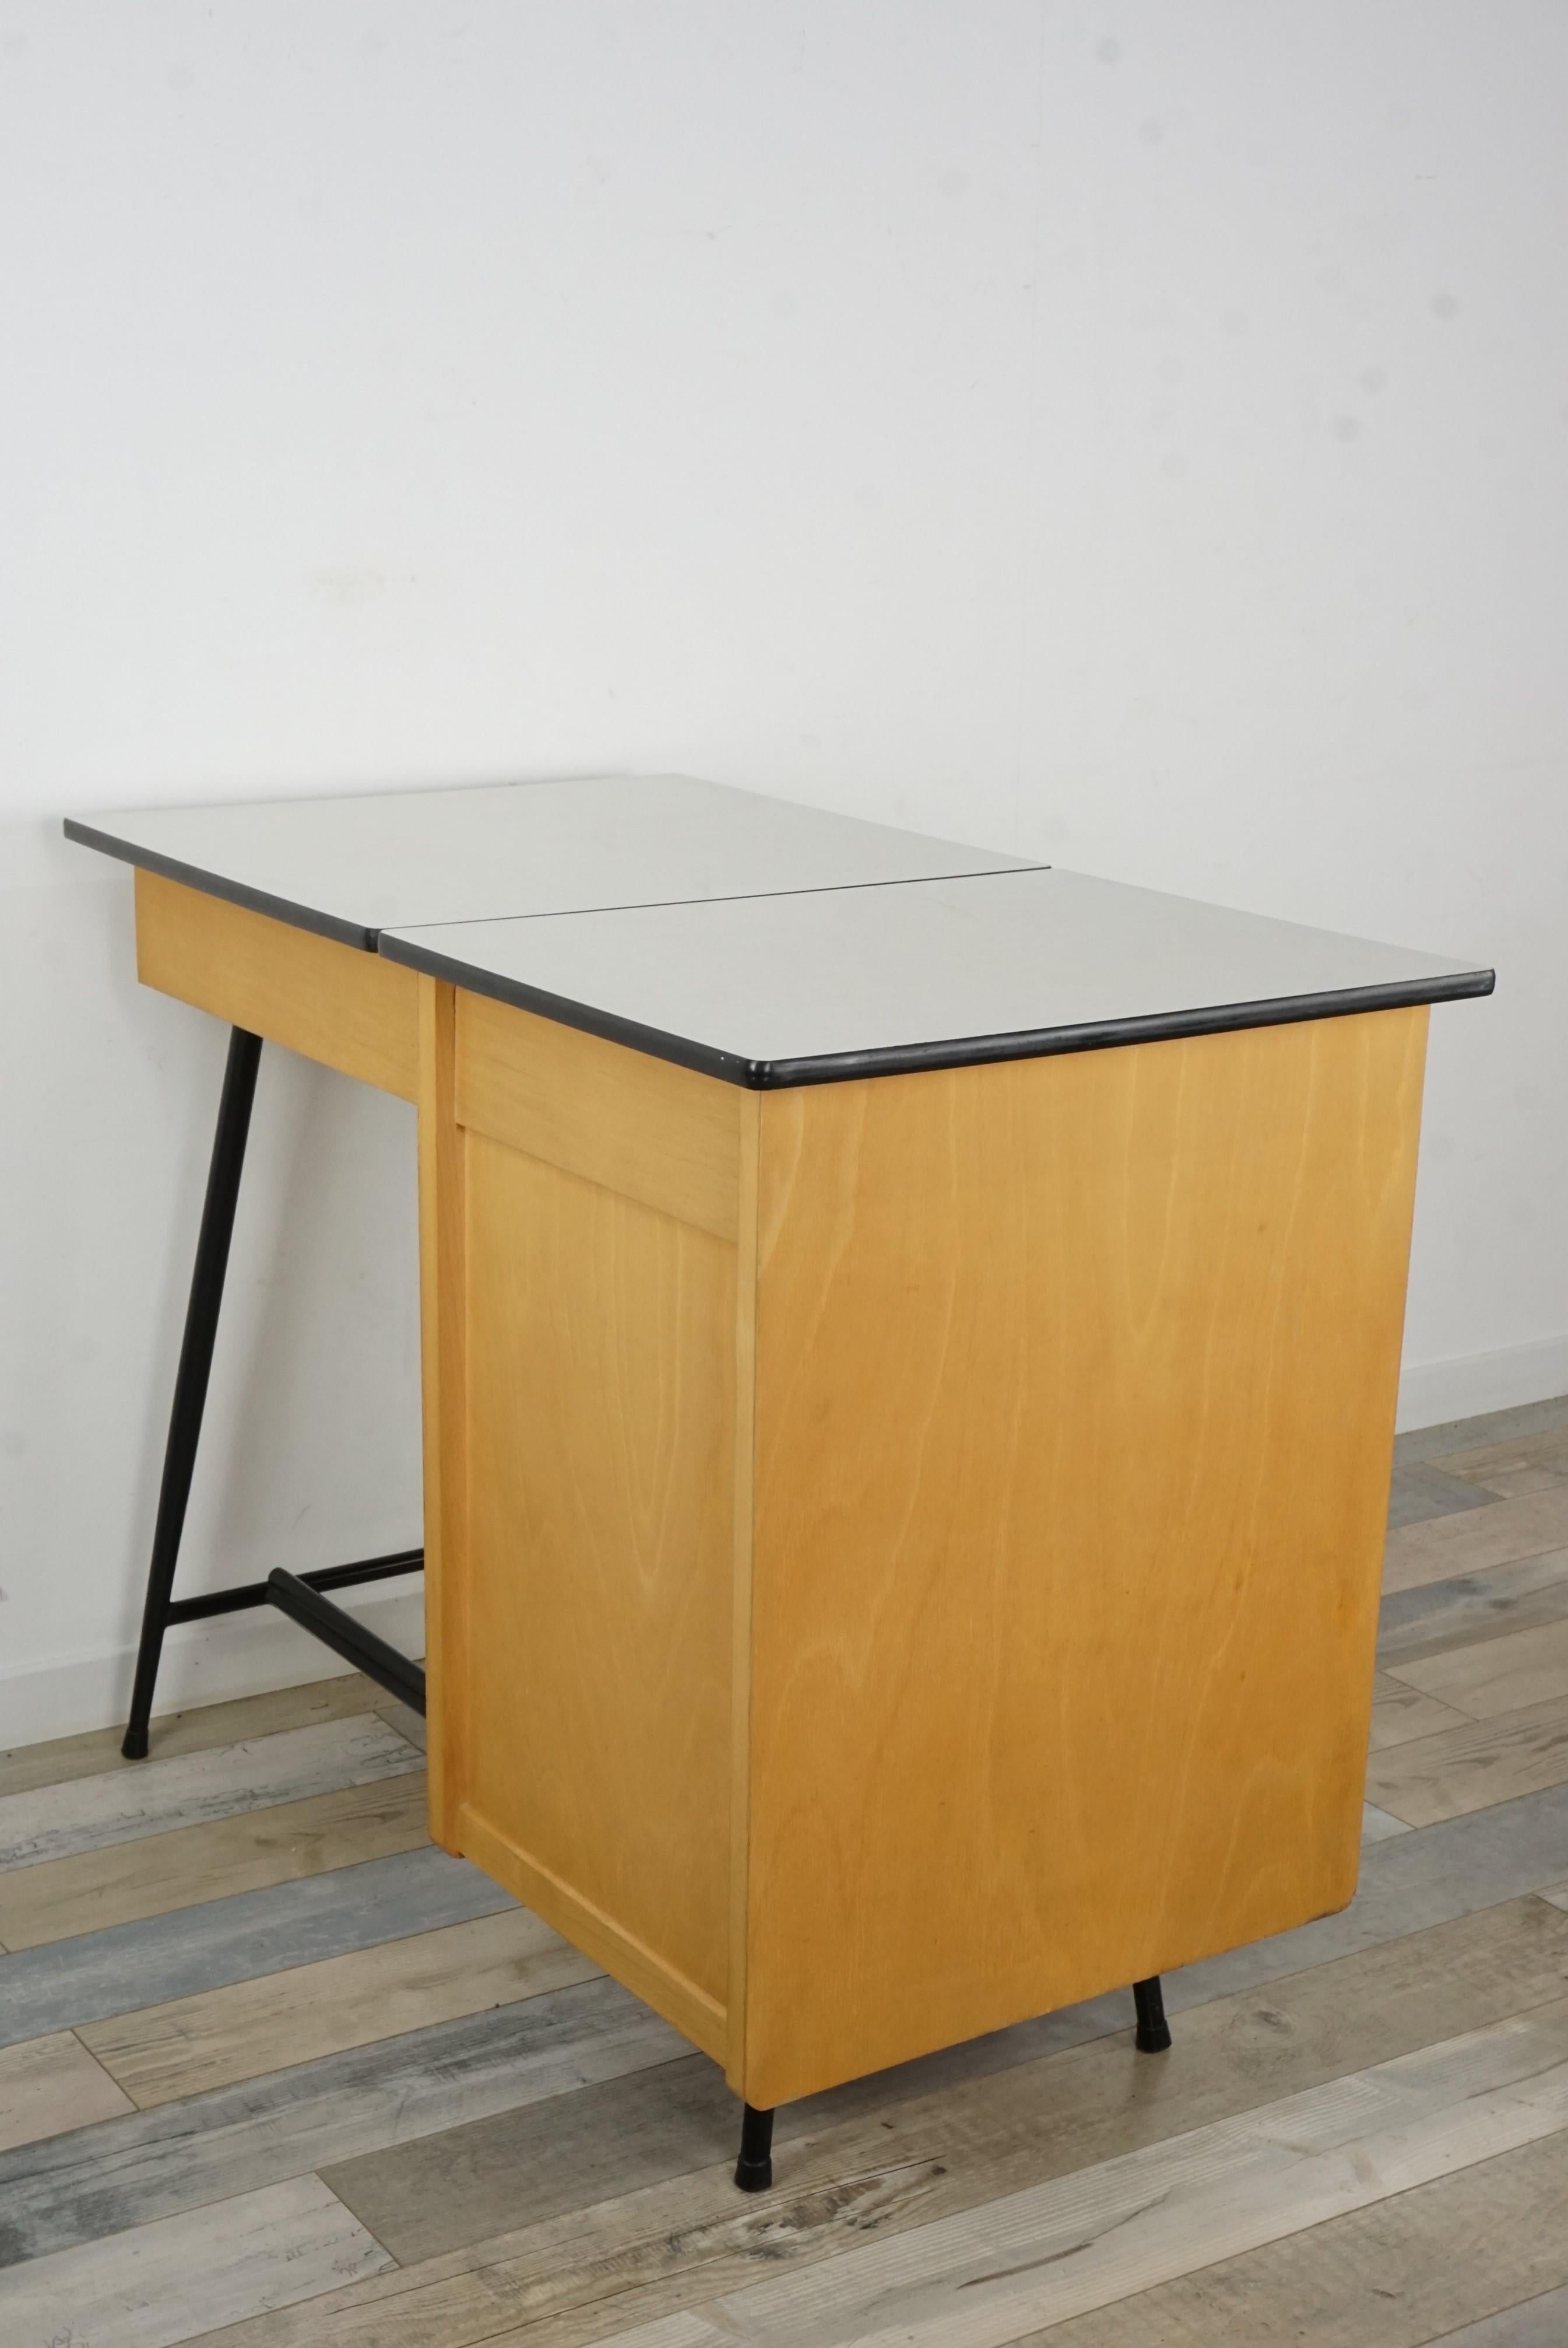 1950s Design Black Metal and Wooden Desk 2